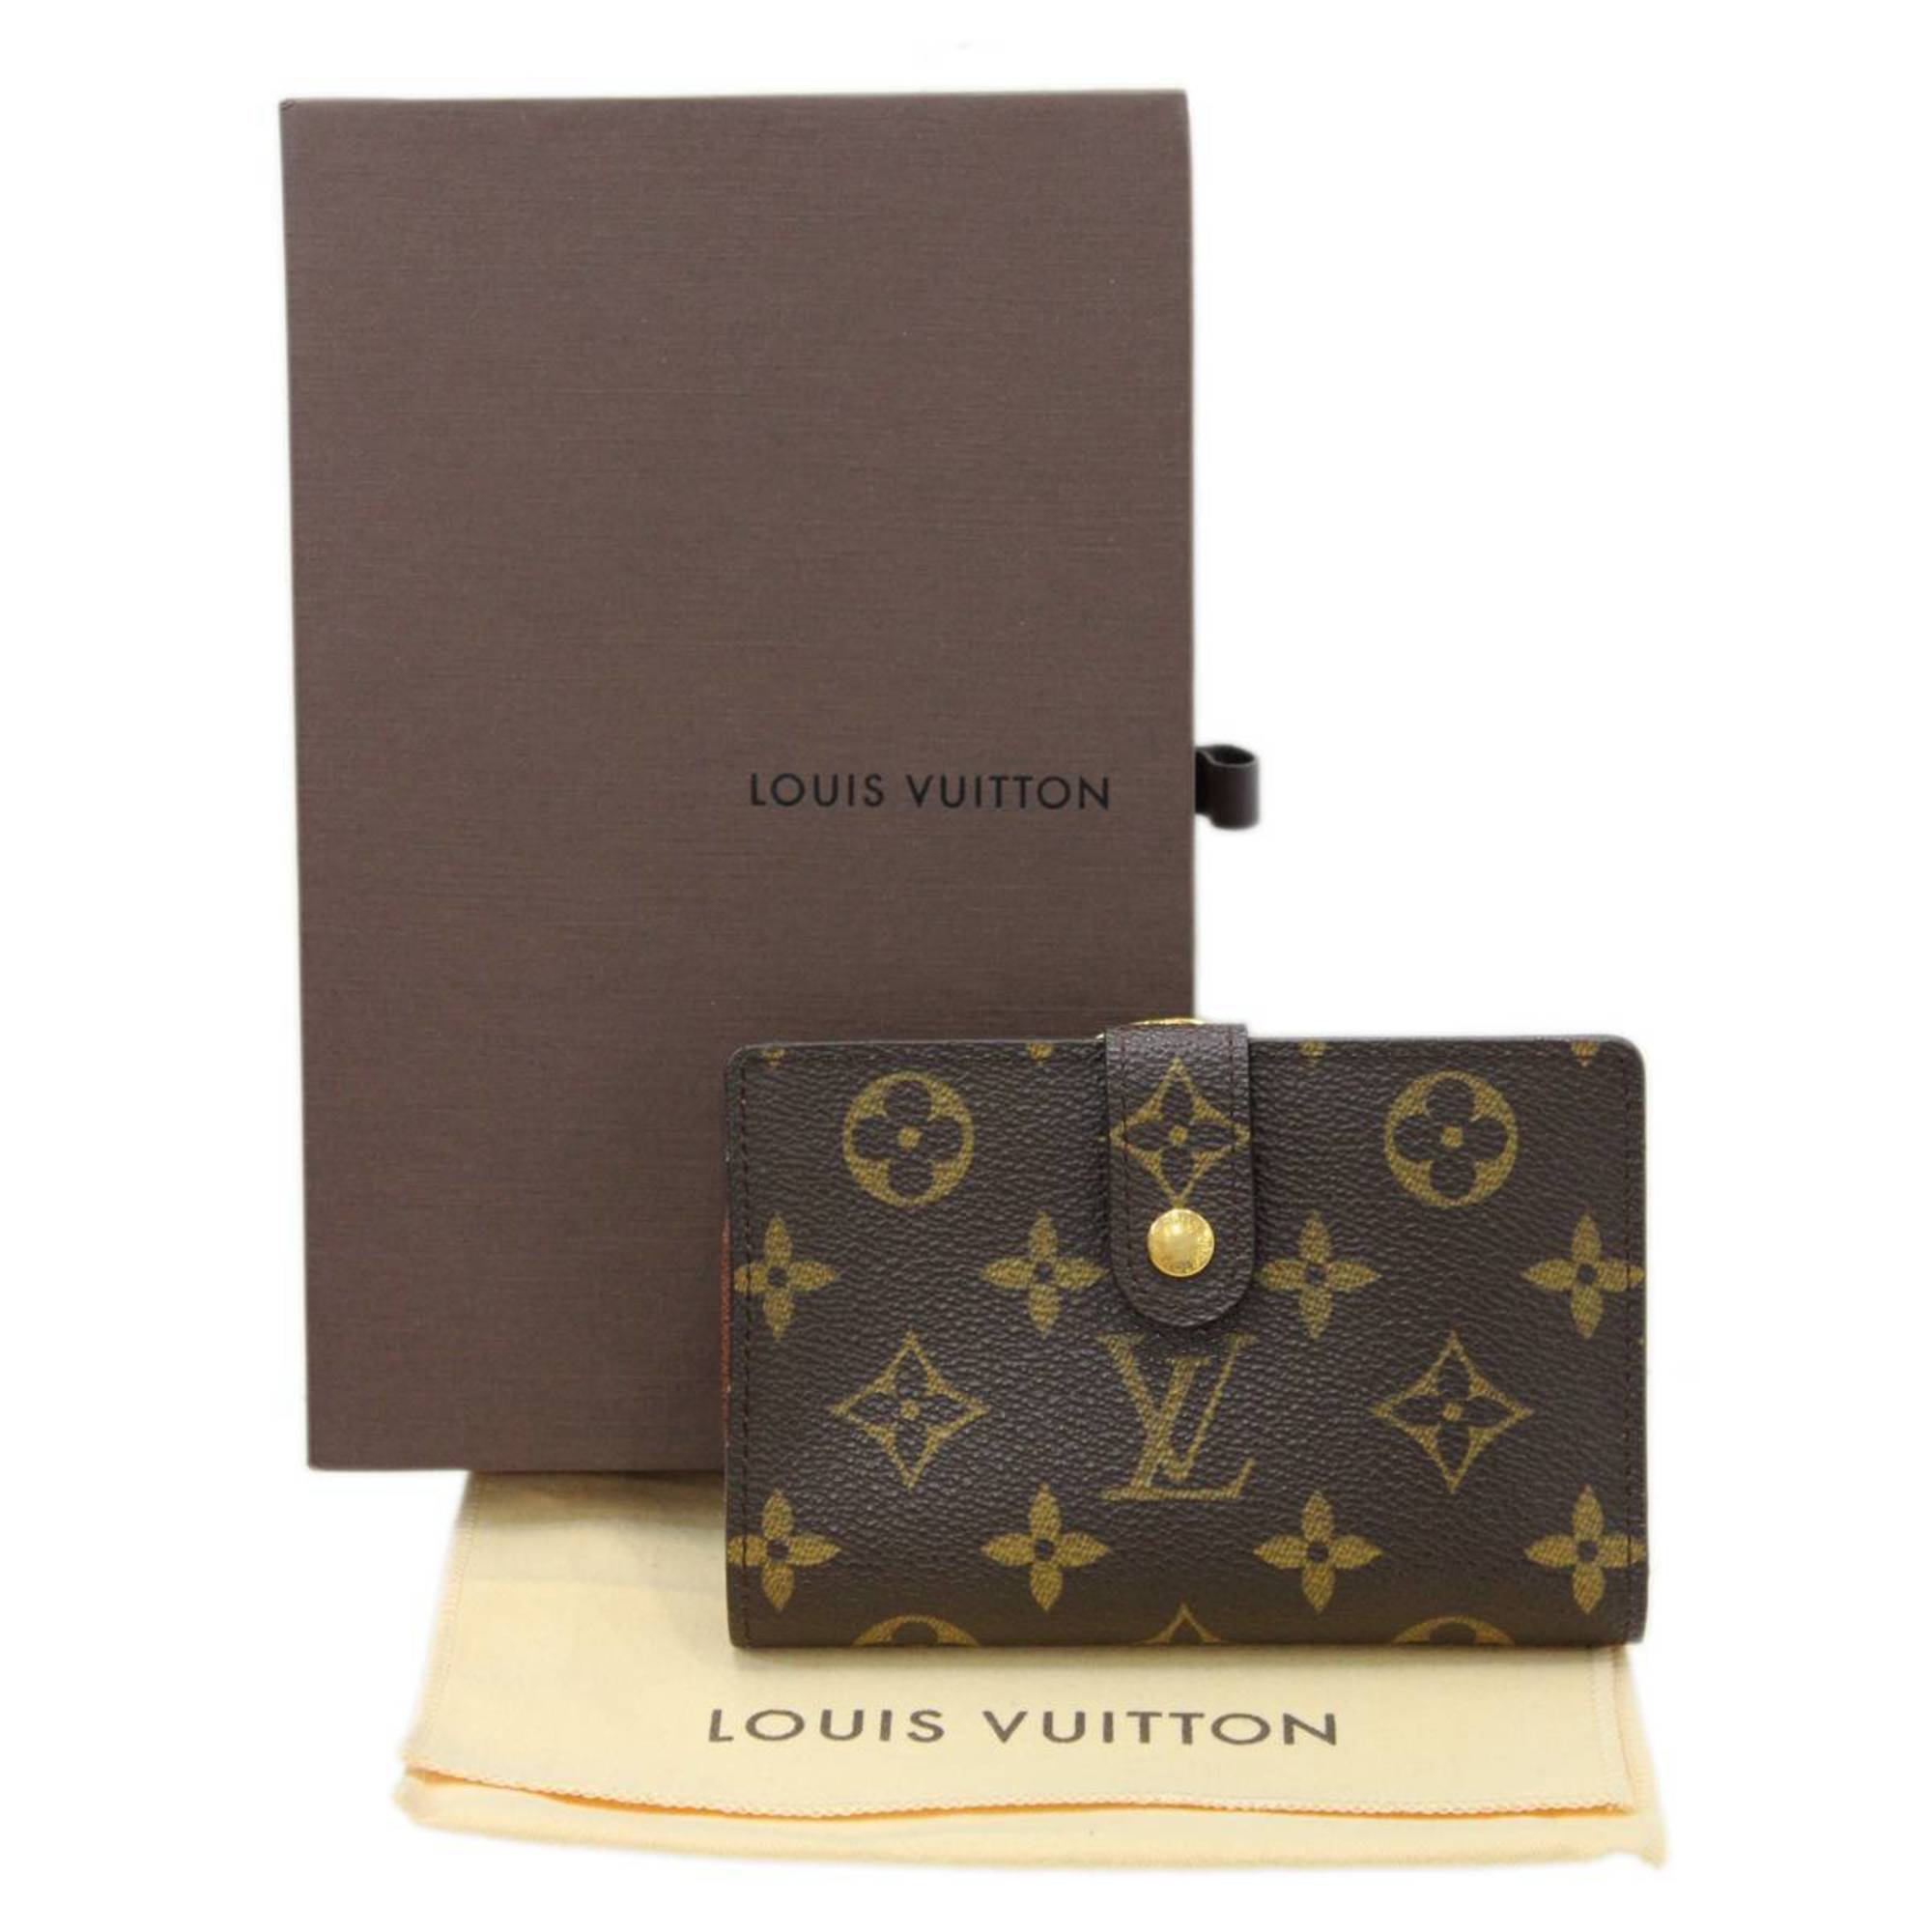 Louis Vuitton Portefeuille Viennois Wallet, Monogram Canvas